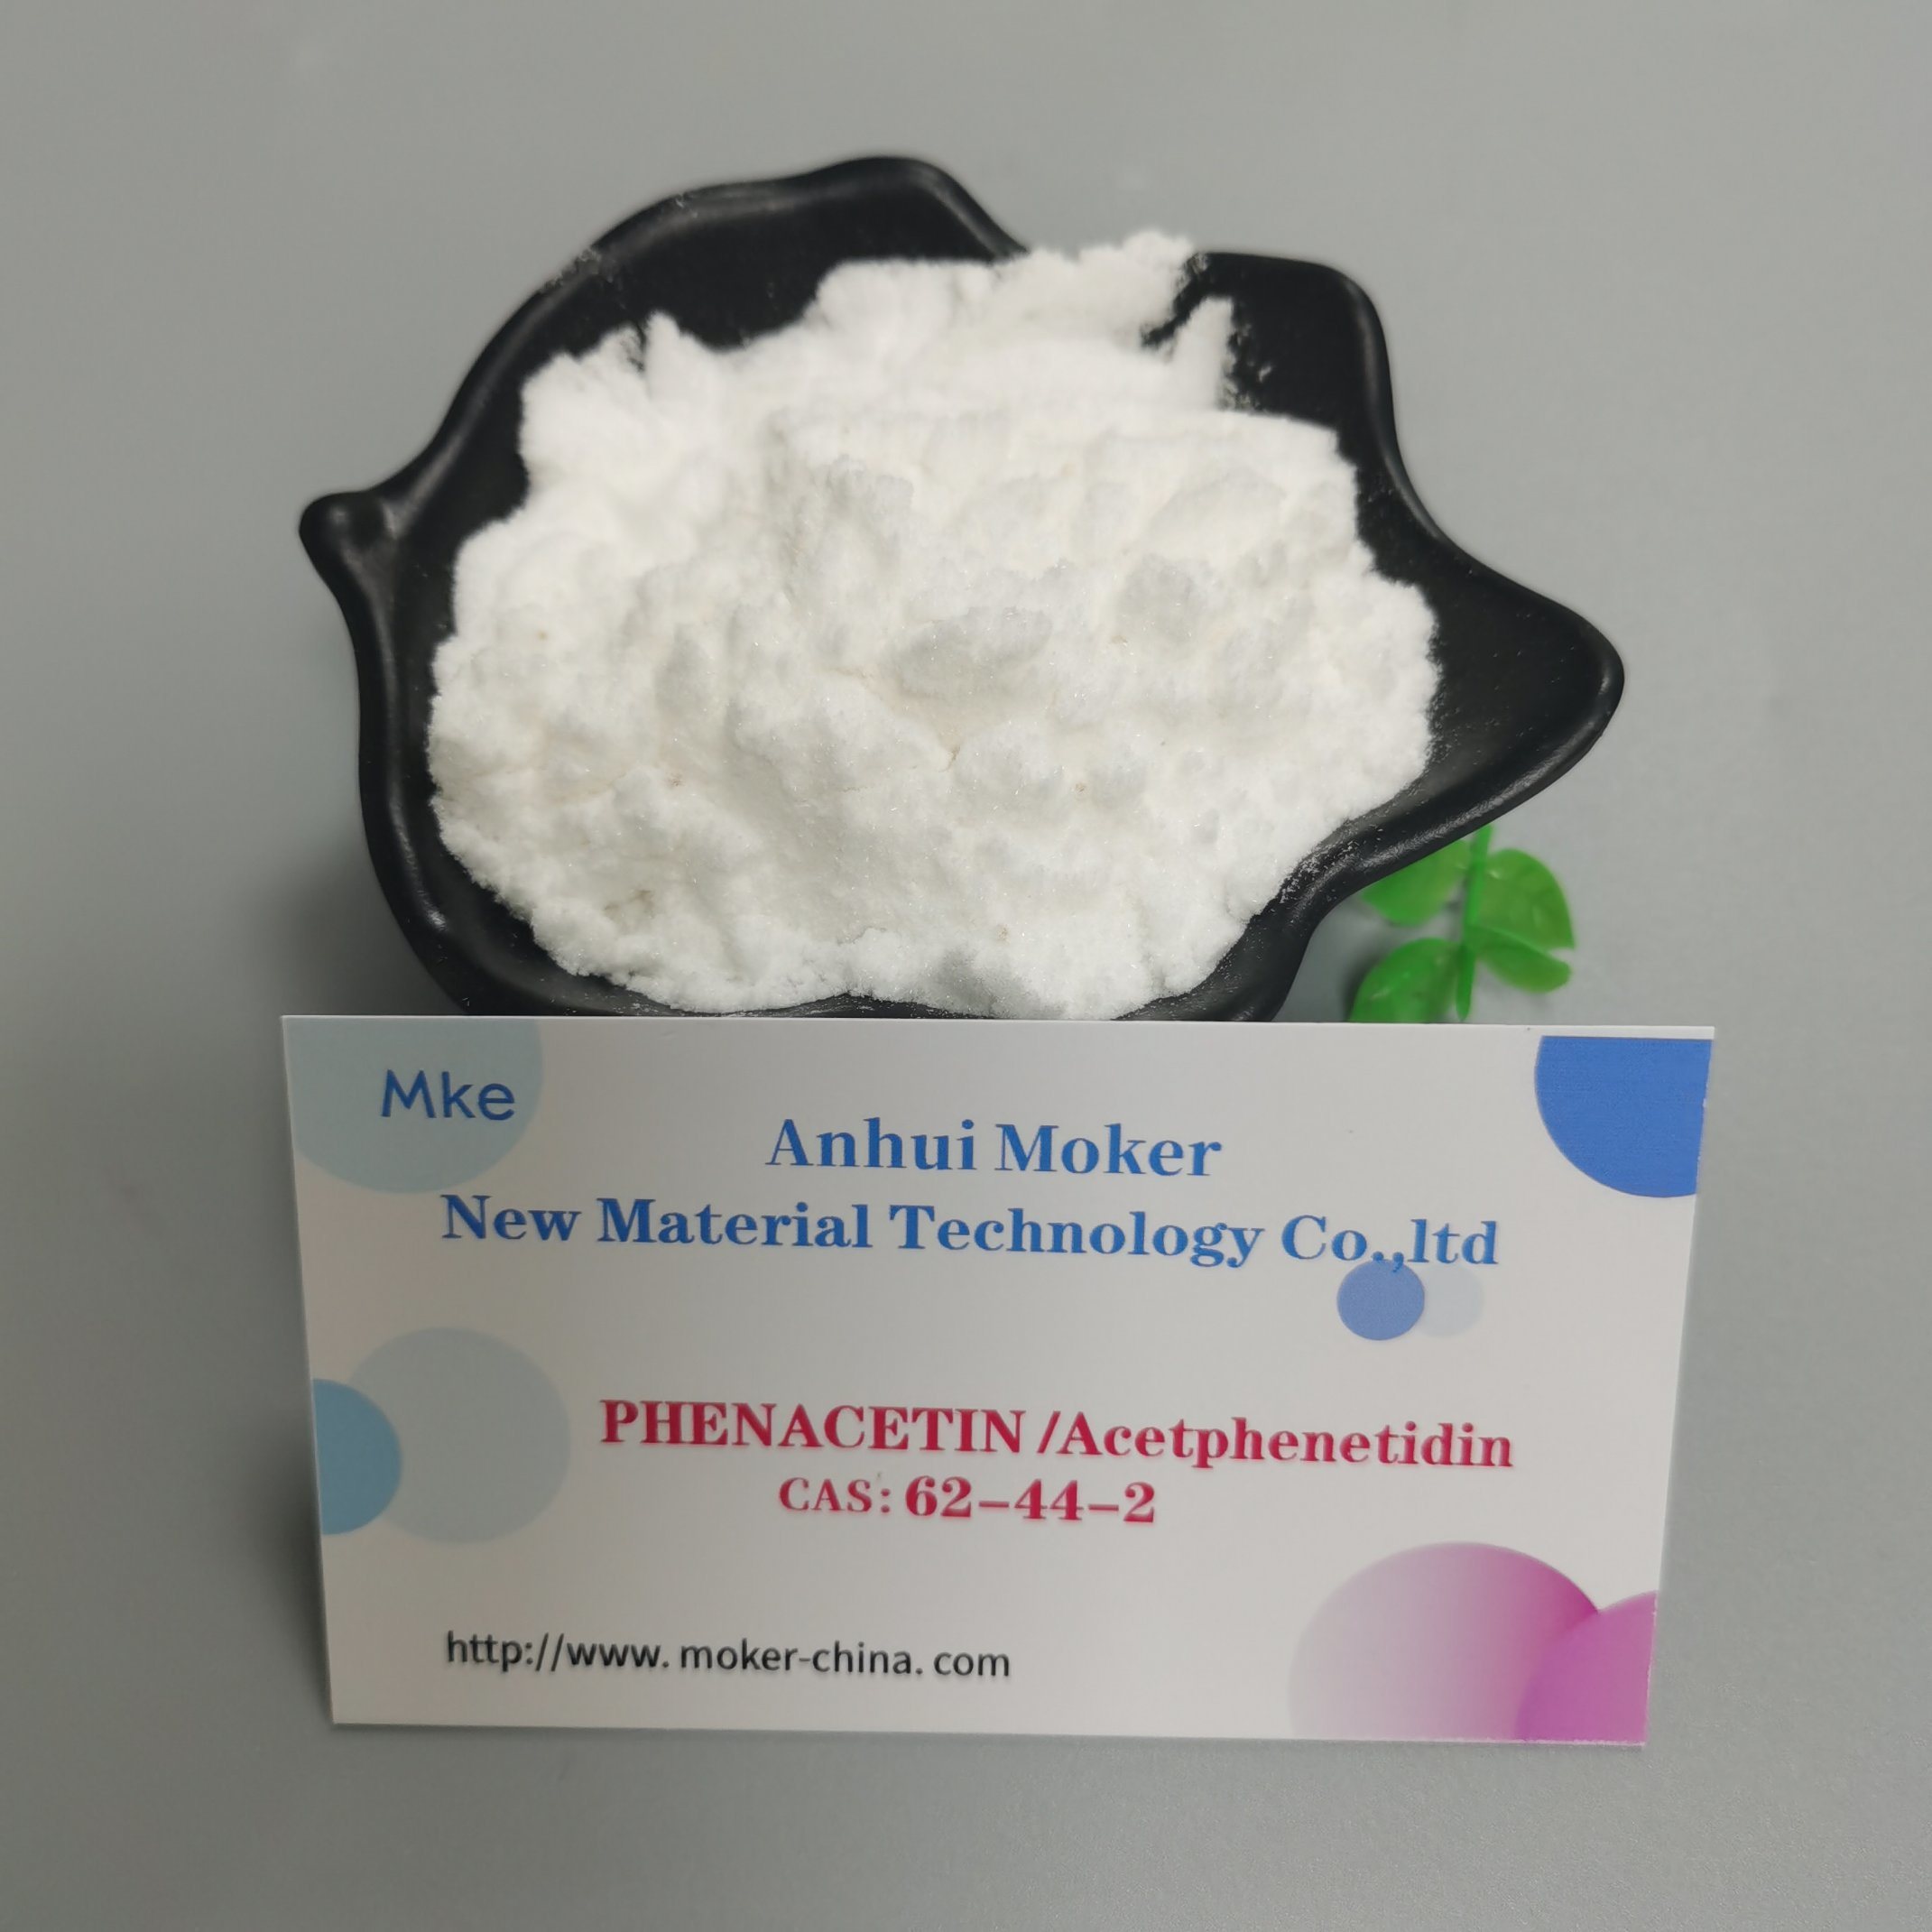 Glänzendes kristallines Phenacetin-Pulver ca. 62-44-2 mit sicherer Lieferung